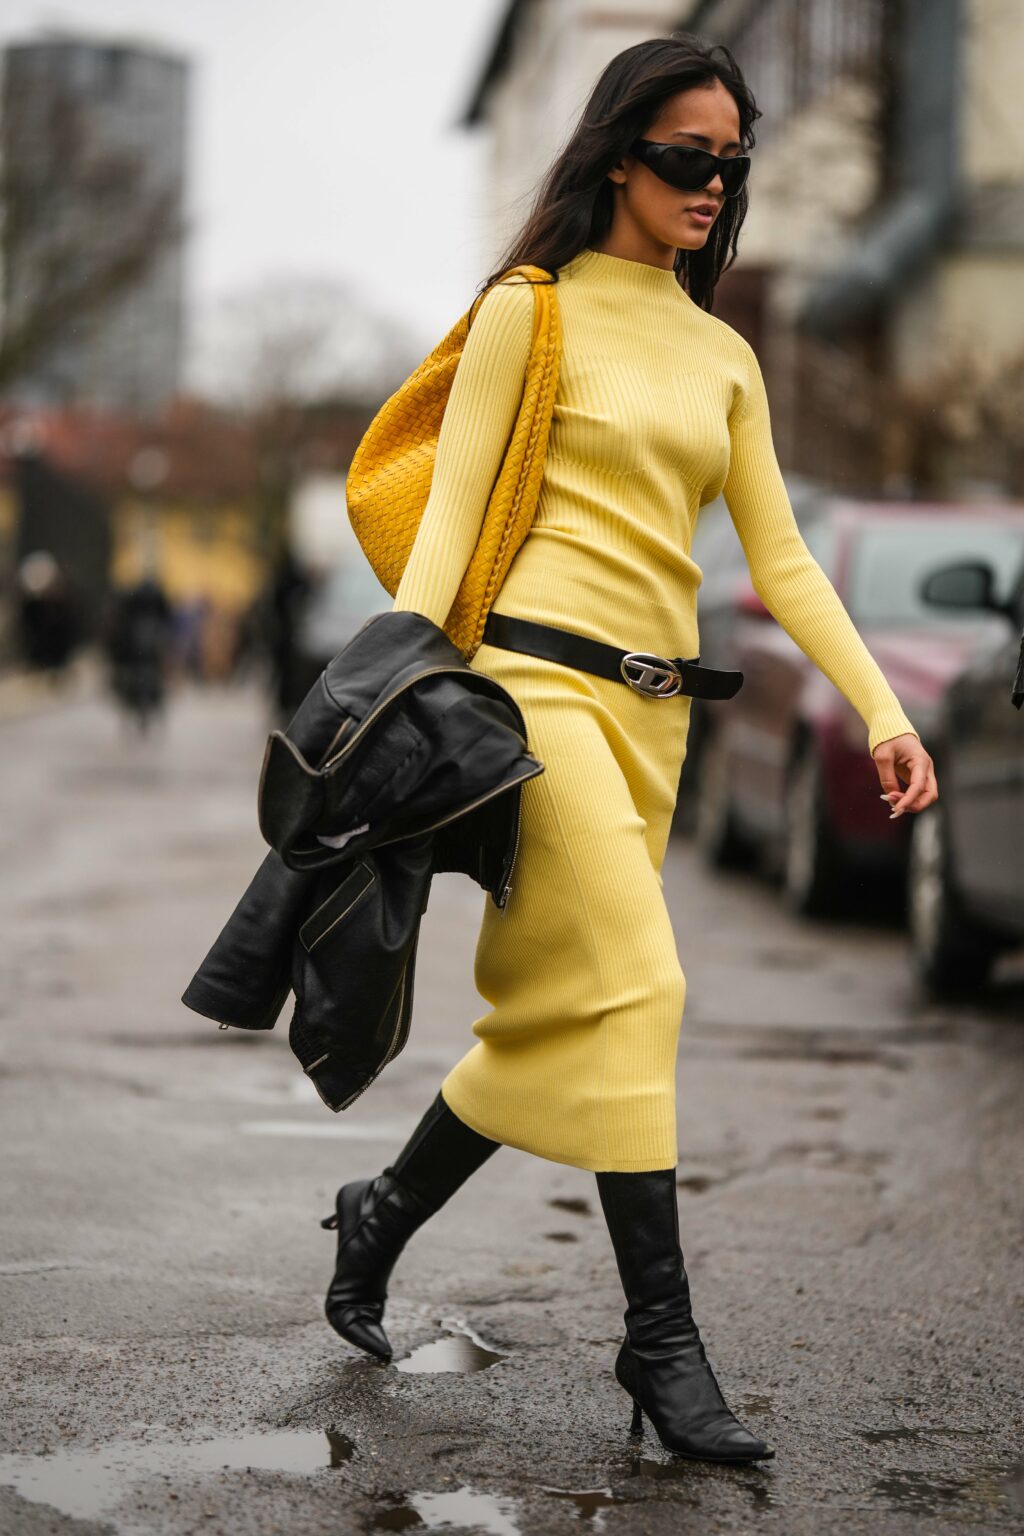 Egy vendég fekete napszemüveget, sárga, hosszú ujjú garbót, bőr válltáskát visel a 2023-as Koppenhágai Divathéten